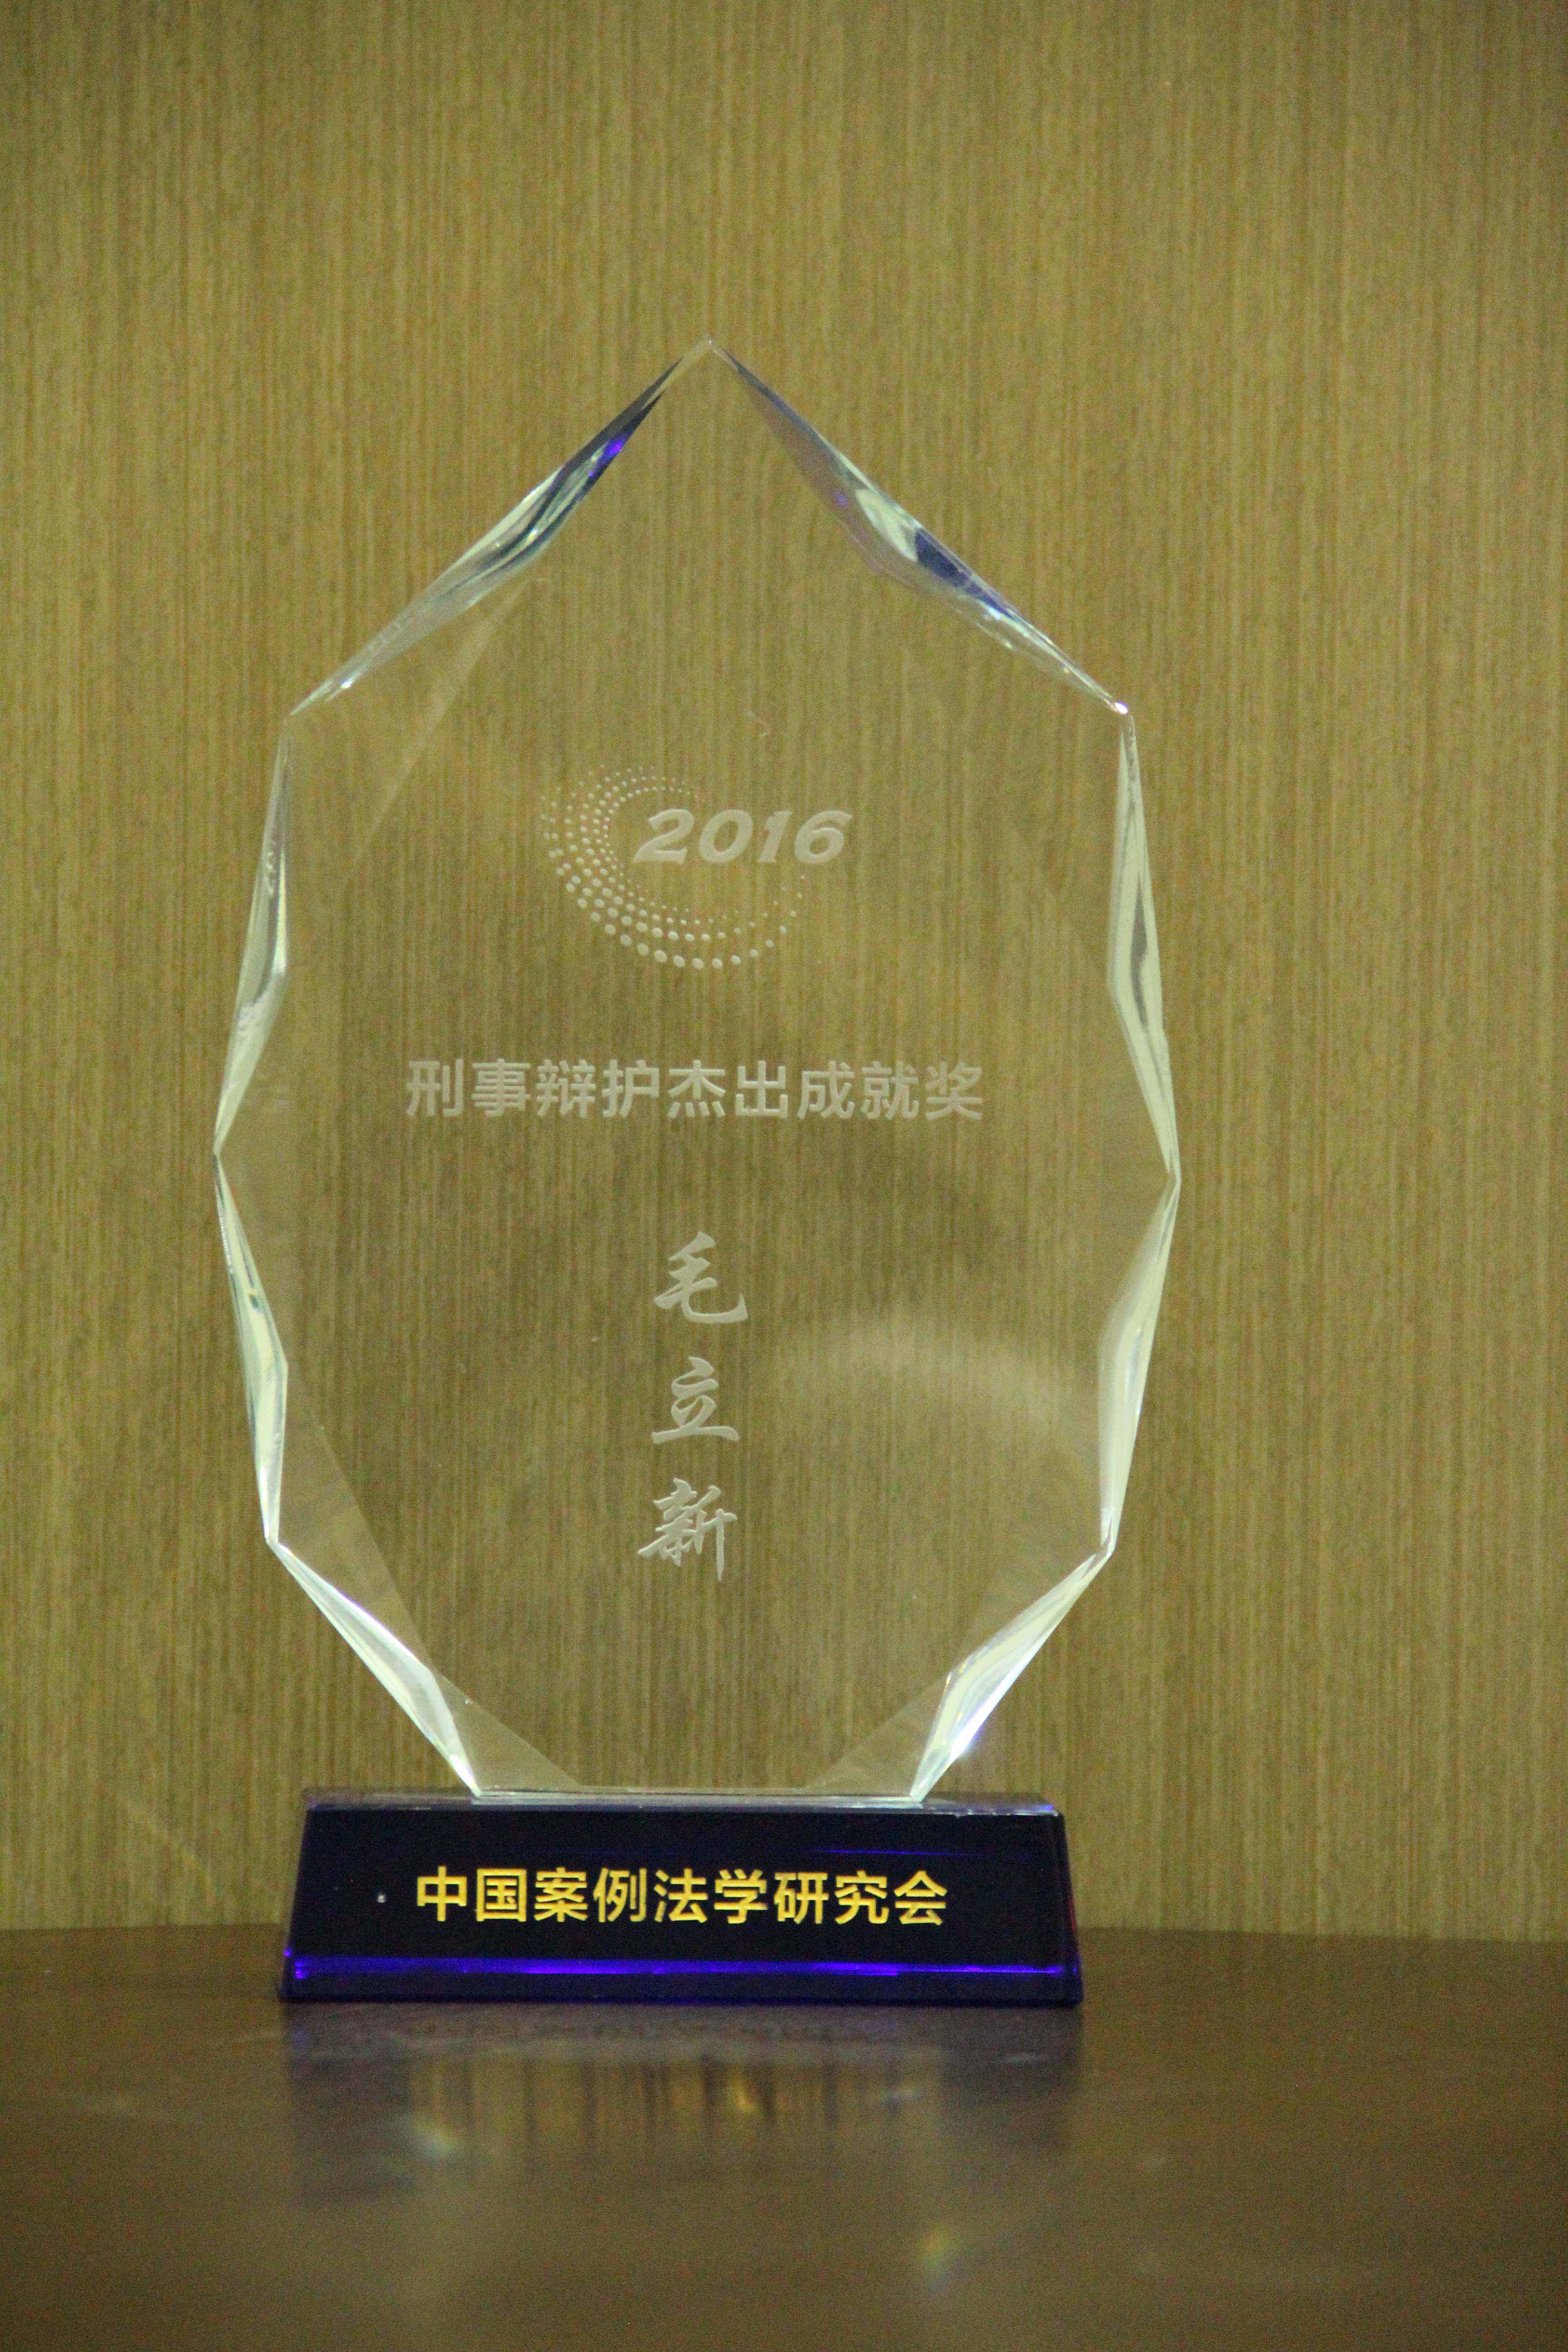 毛立新律师荣获中国案例法学研究会2016年度刑事辩护杰出成就奖